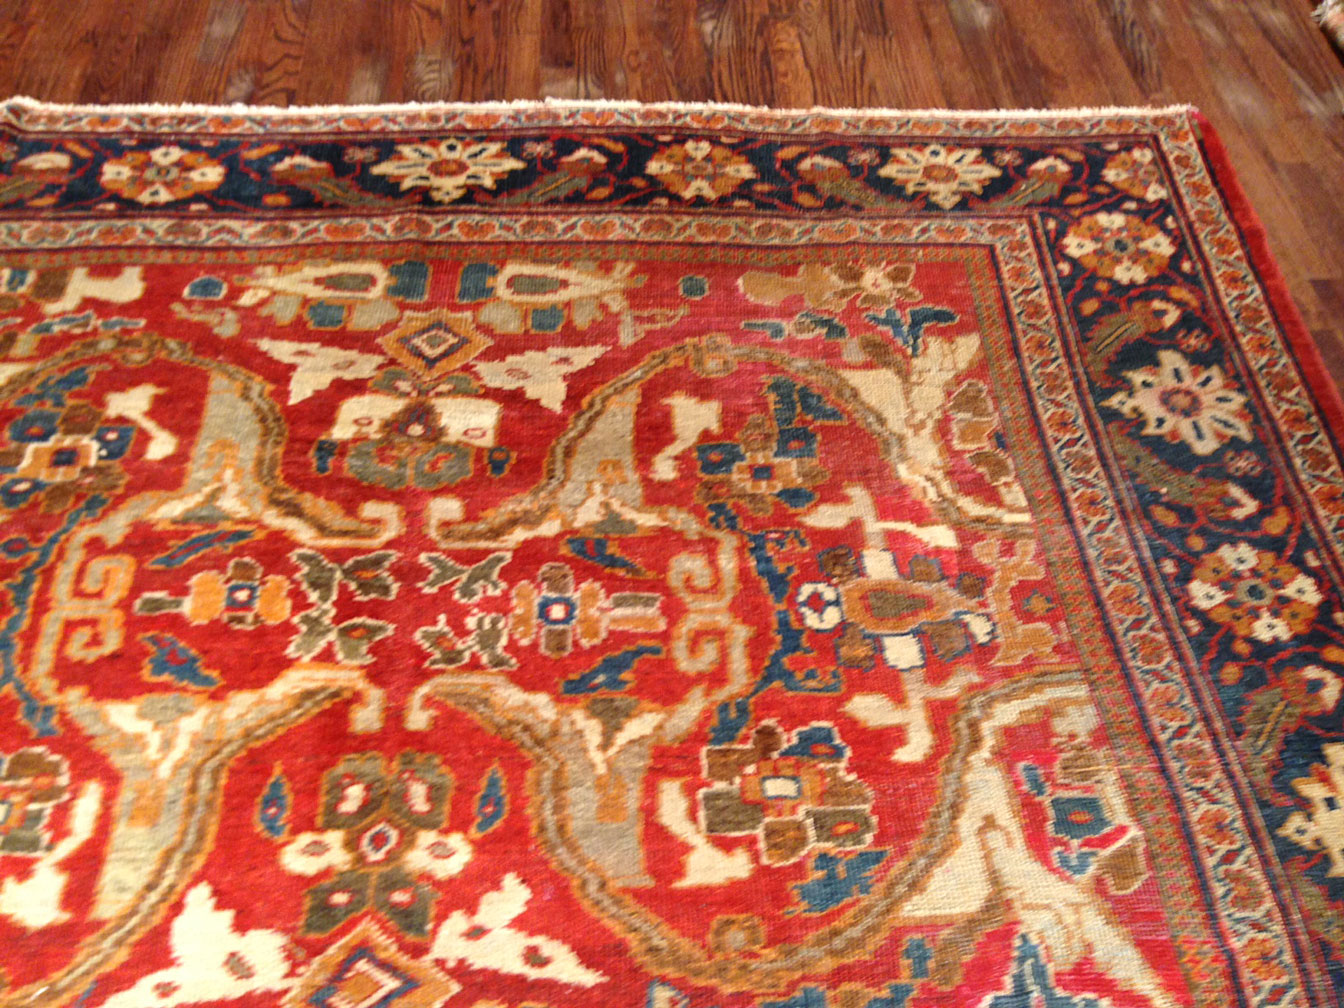 Antique sultan abad Carpet - # 8792